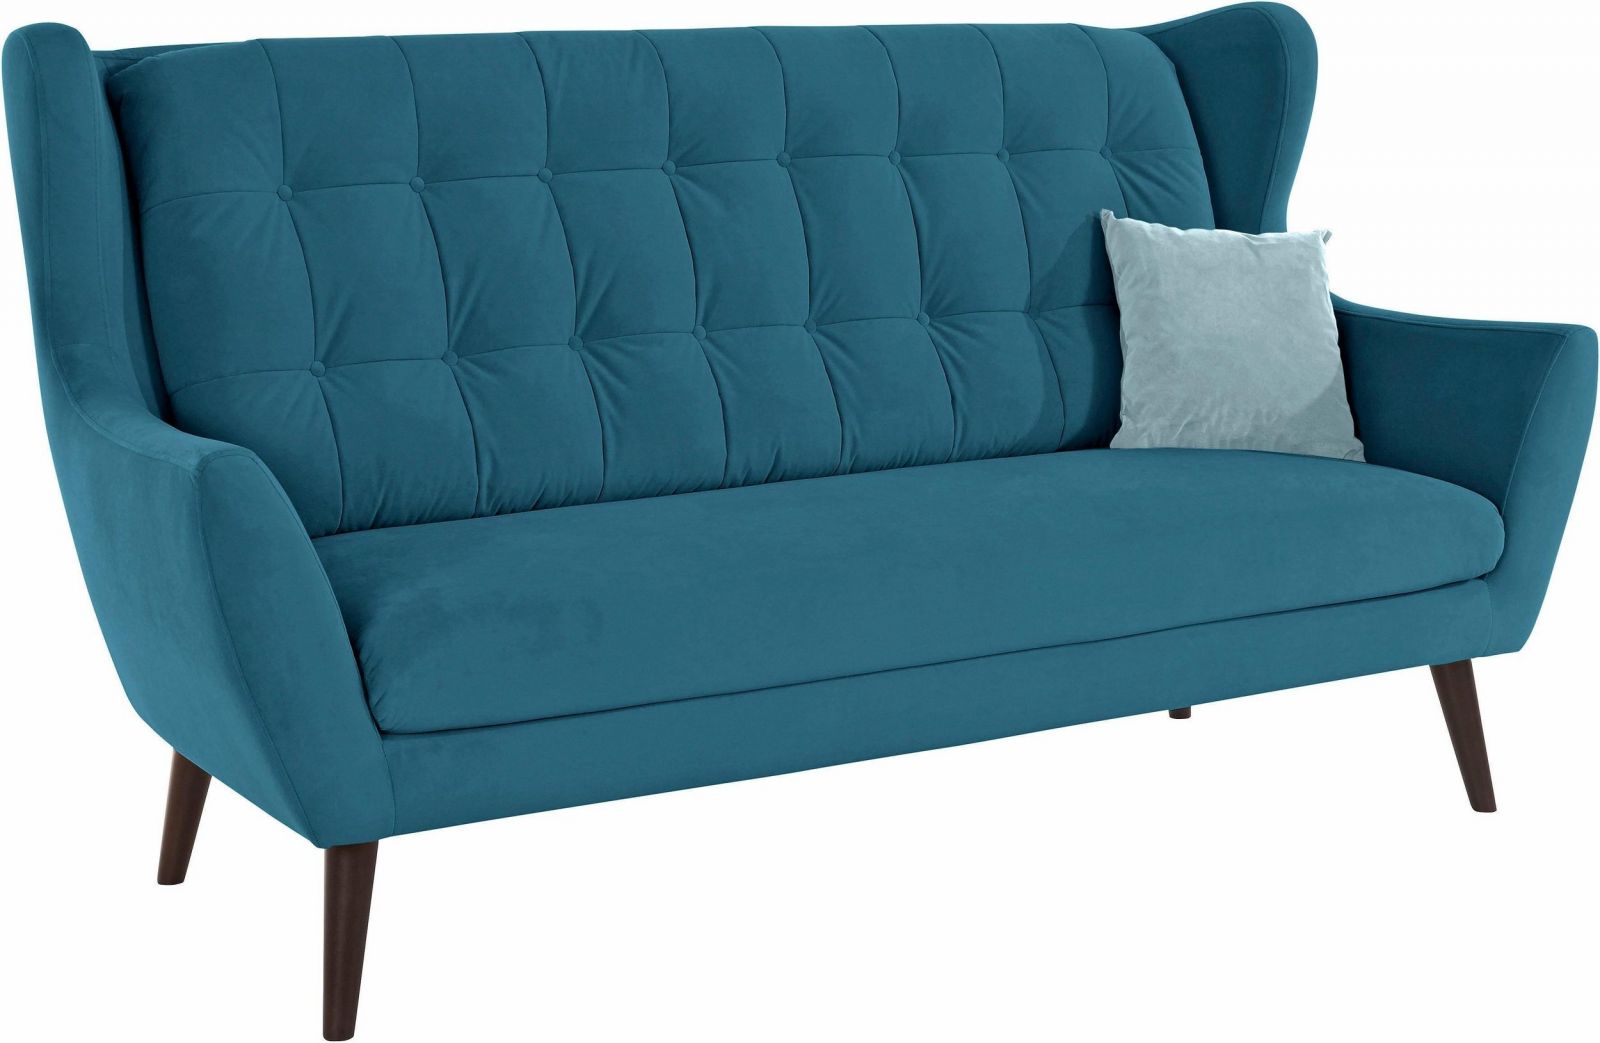 Sofa văng khâu nút bản rộng màu xanh lam nhạt